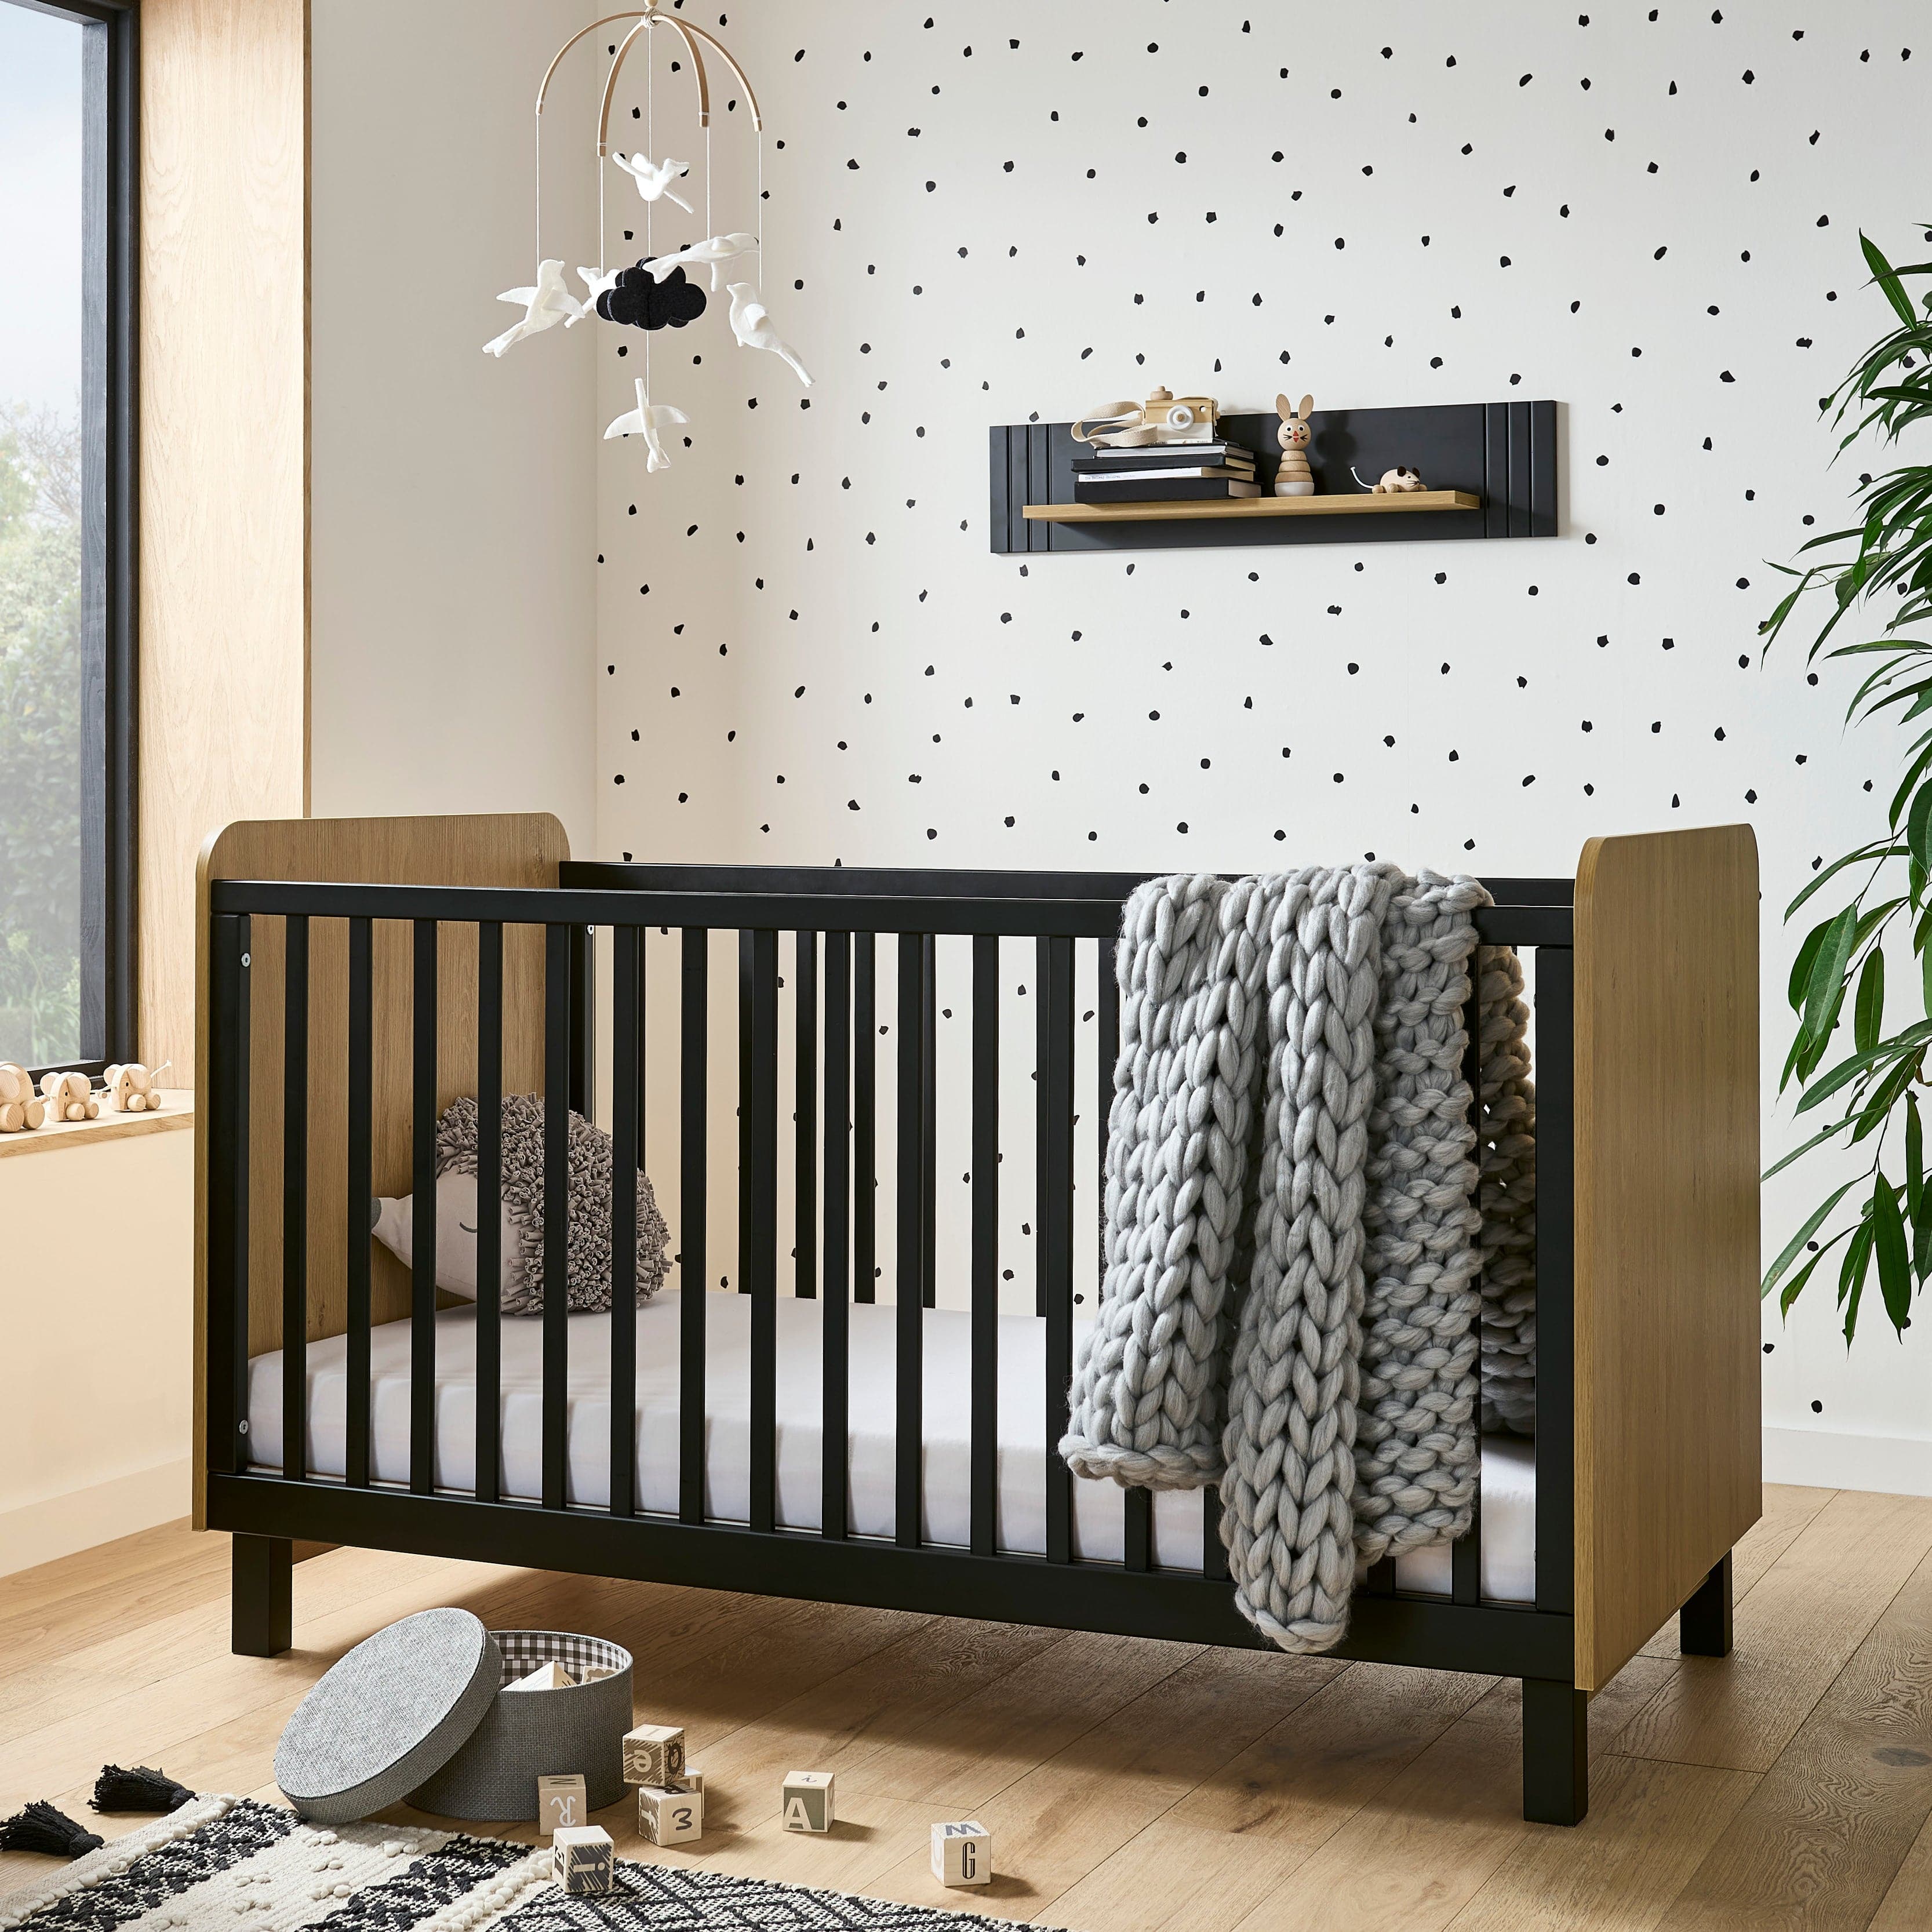 CuddleCo Rafi 3 Piece Room Set in Oak & Black Nursery Room Sets